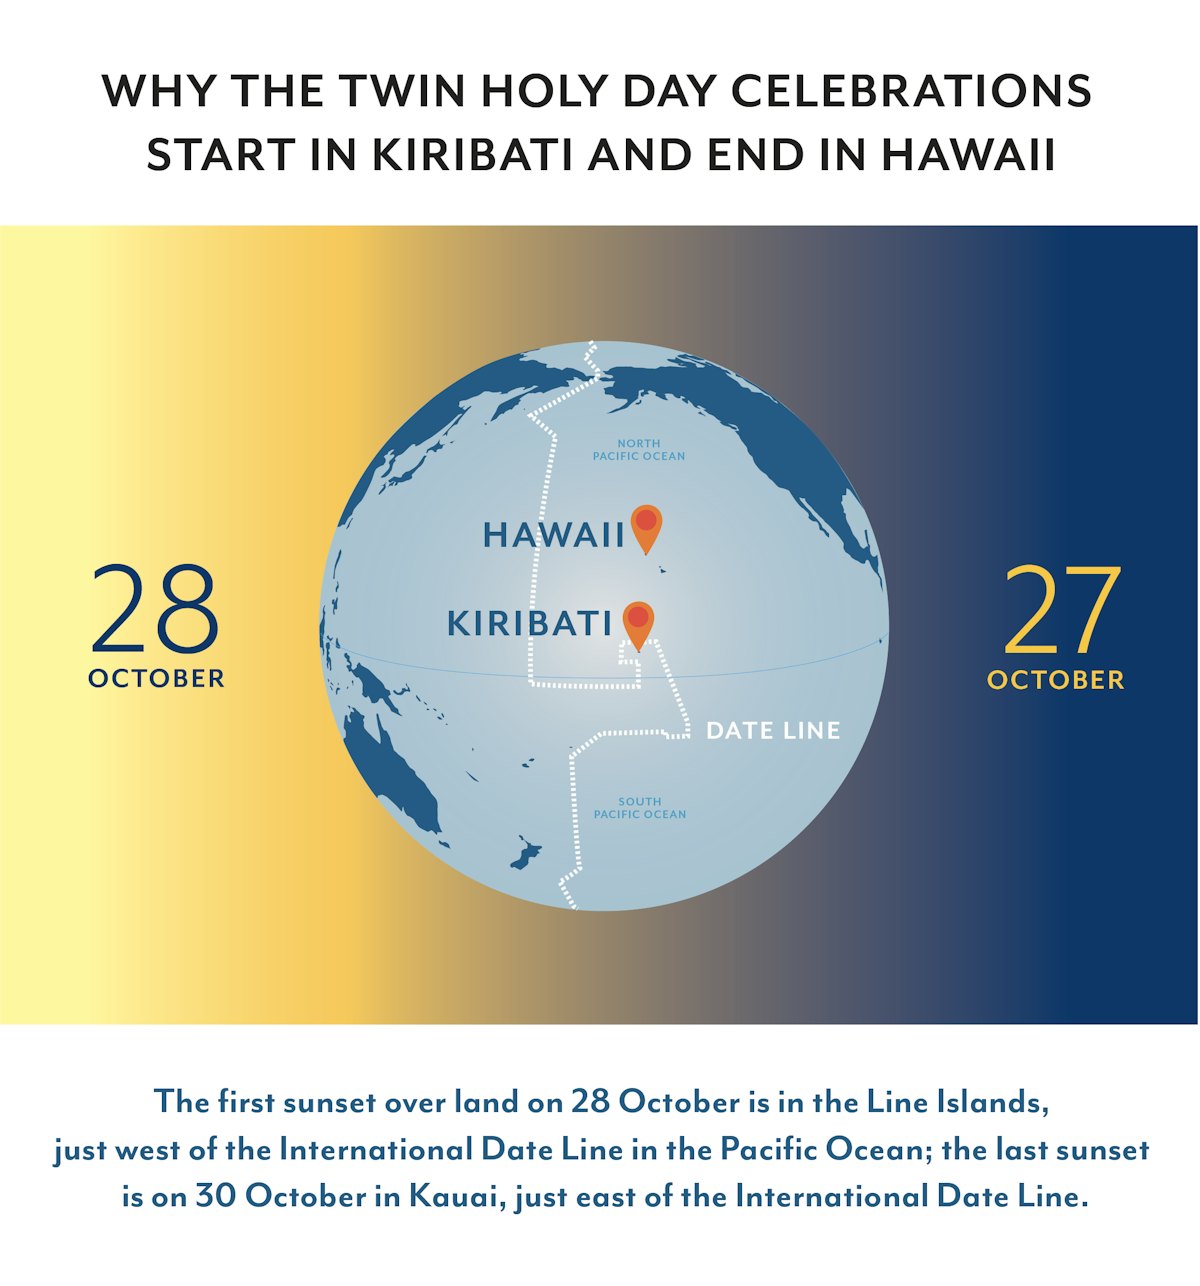 Ce graphique explique pourquoi les célébrations du jour saint sacré débutent à Kiribati et se terminent à Hawaii.